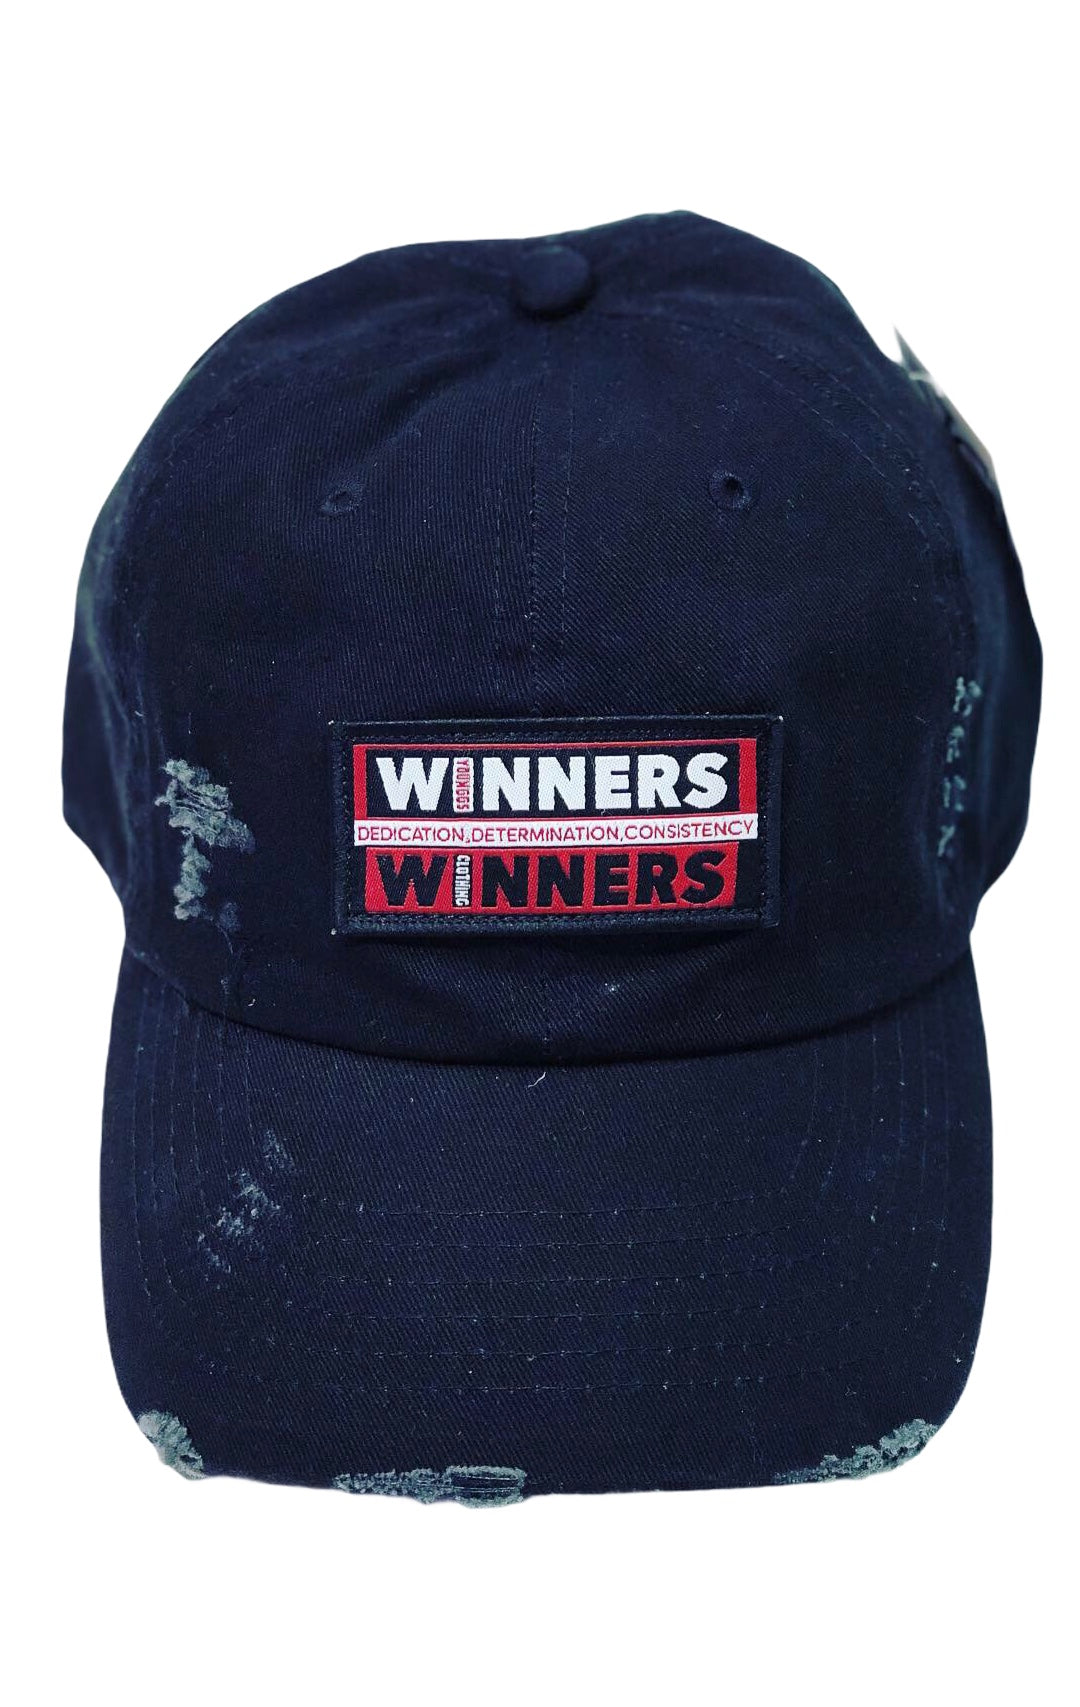 WINNERS Dad Hats